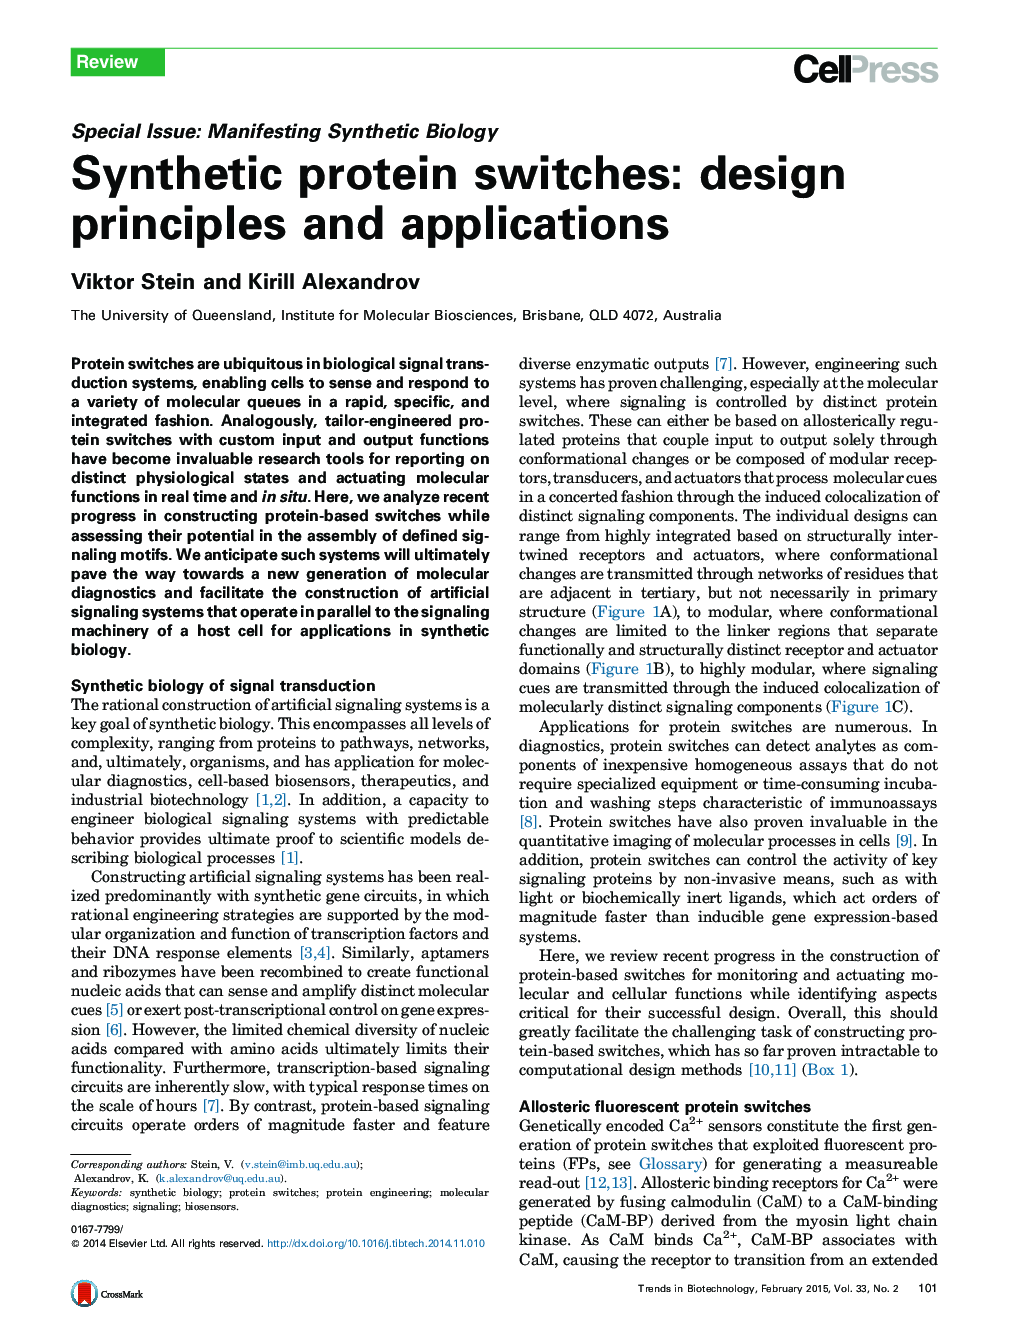 سوئیچ پروتئین مصنوعی: اصول طراحی و برنامه های کاربردی 